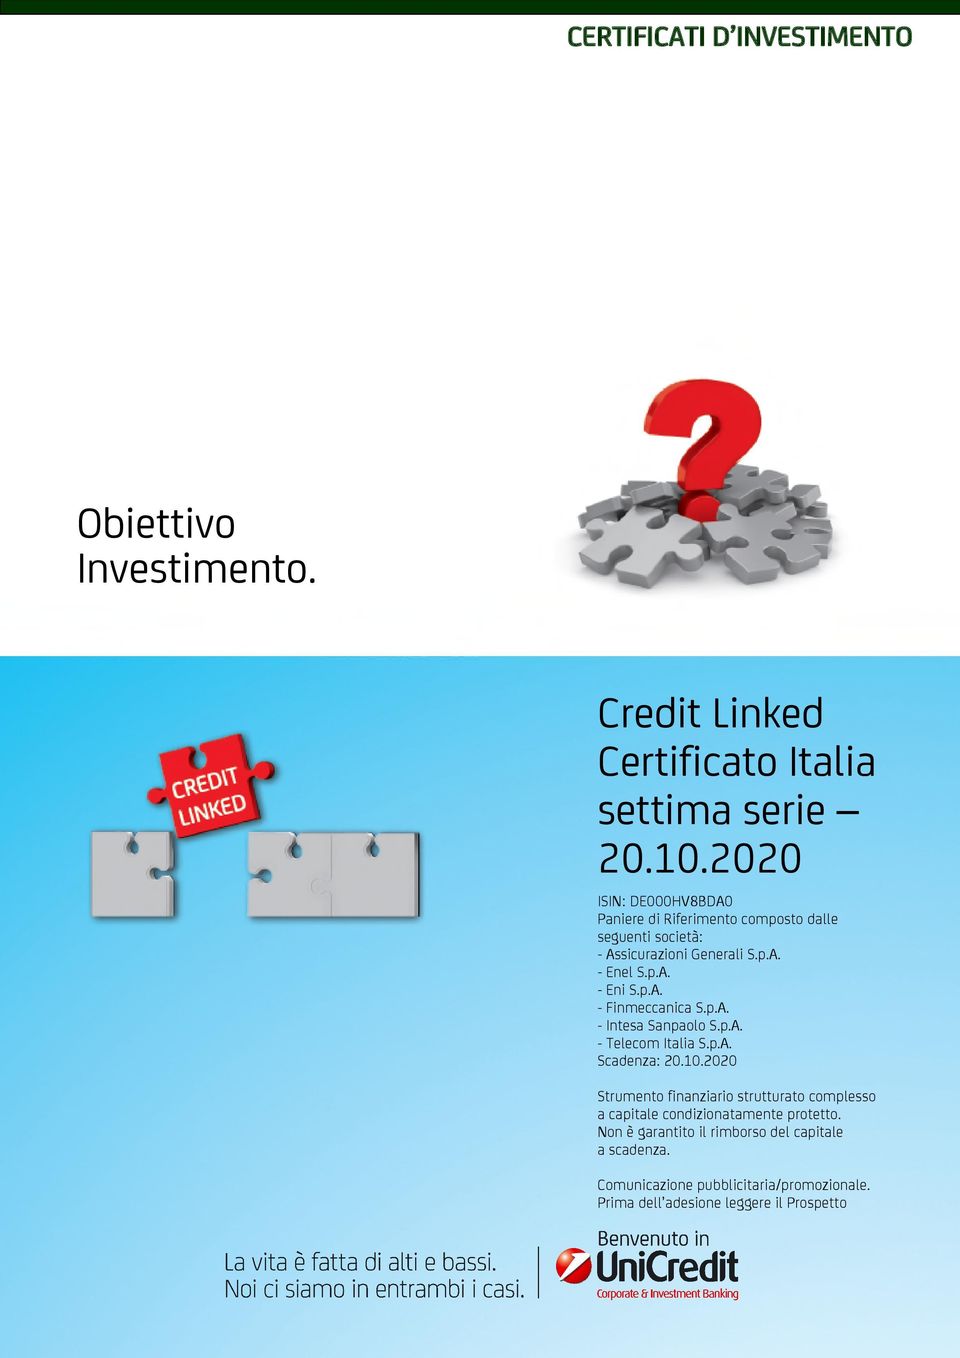 p.A. - Eni S.p.A. - Finmeccanica S.p.A. - Intesa Sanpaolo S.p.A. - Telecom Italia S.p.A. Scadenza: Strumento finanziario strutturato complesso a capitale condizionatamente protetto.